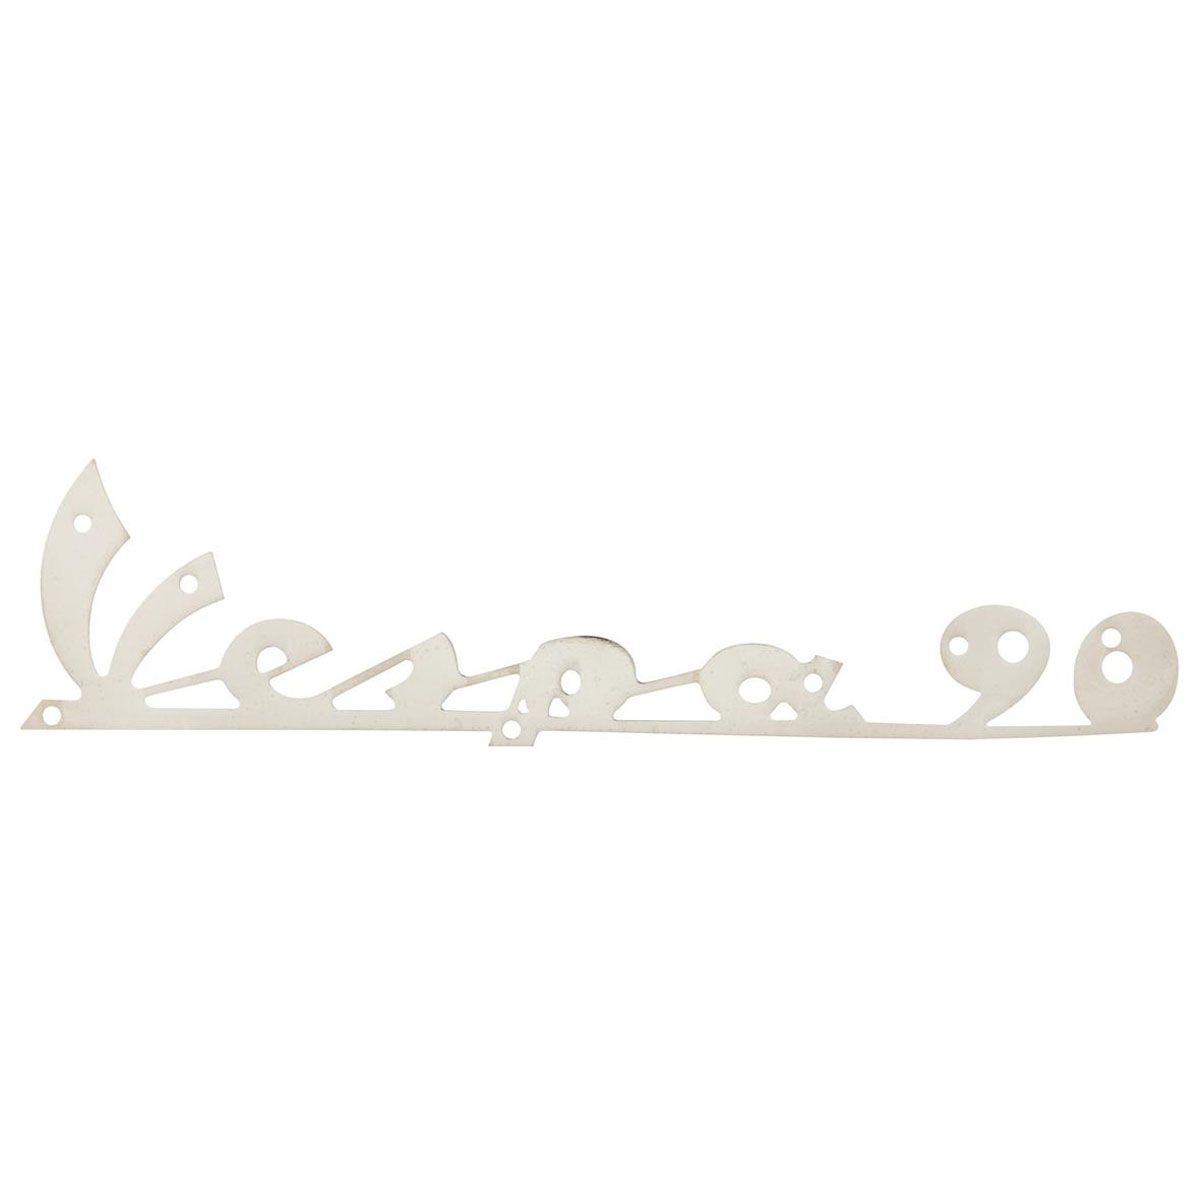 Emblem Schriftzug "Vespa" für Beinschild Piaggio Vespa Modelle 